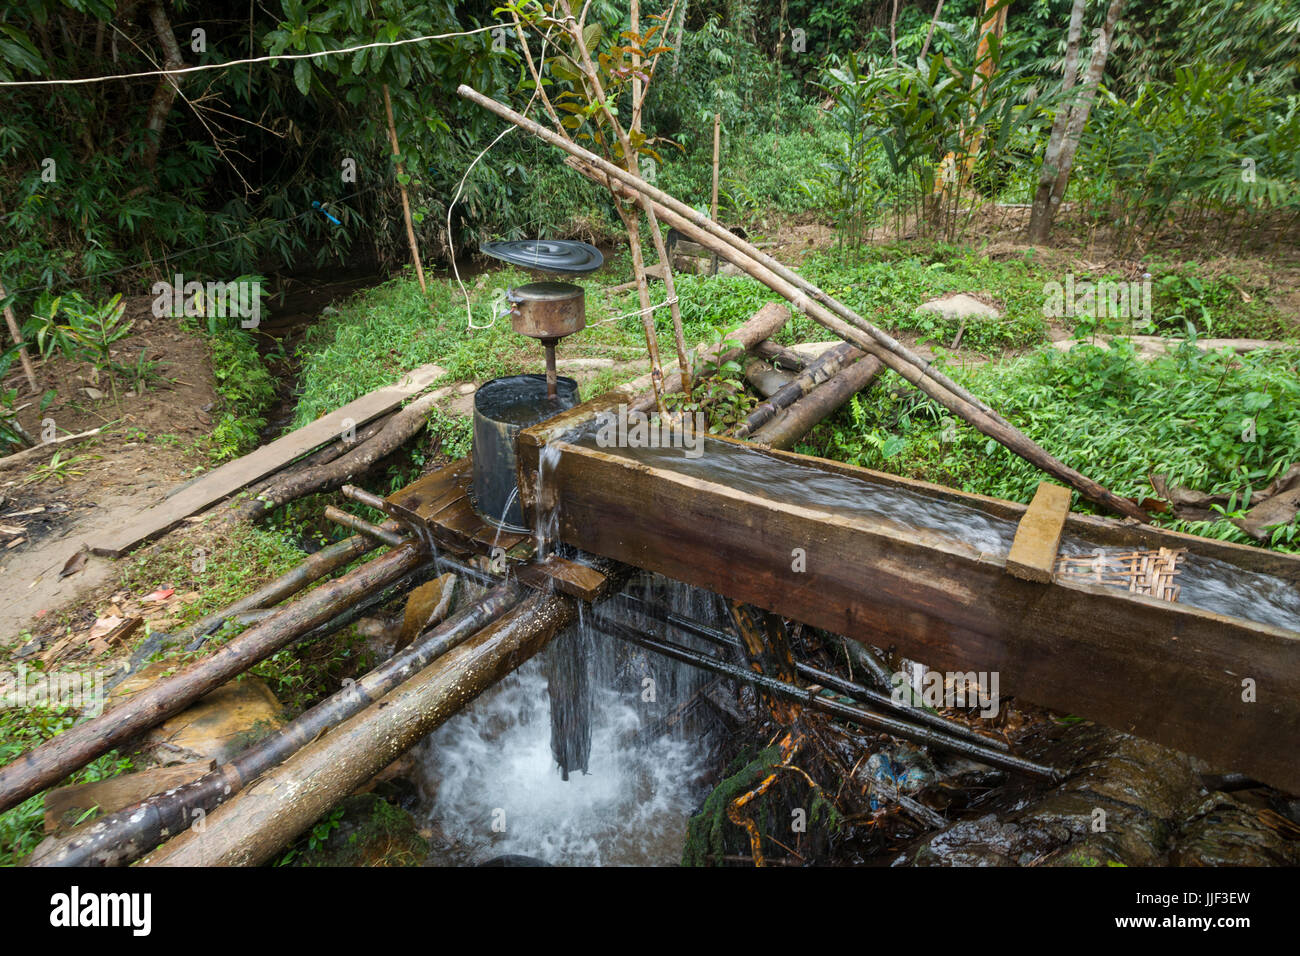 Acqua di un affluente al fiume Nam Ou è deviato verso una micro turbina idra di Ban Huay Phouk, Laos. Queste turbine sono utilizzate da tutti i villaggi lungo il fiume per generare elettricità, ma quelli del gambo principale può essere utilizzato solo nella stagione secca quando il livello di acqua è sufficientemente bassa per montarli al letto del fiume. Divieto Huay Phouk utilizza una complessa rete di canali di diversione su un flusso tributario per produrre energia elettrica in modo più coerente e per tutto l'anno. Foto Stock